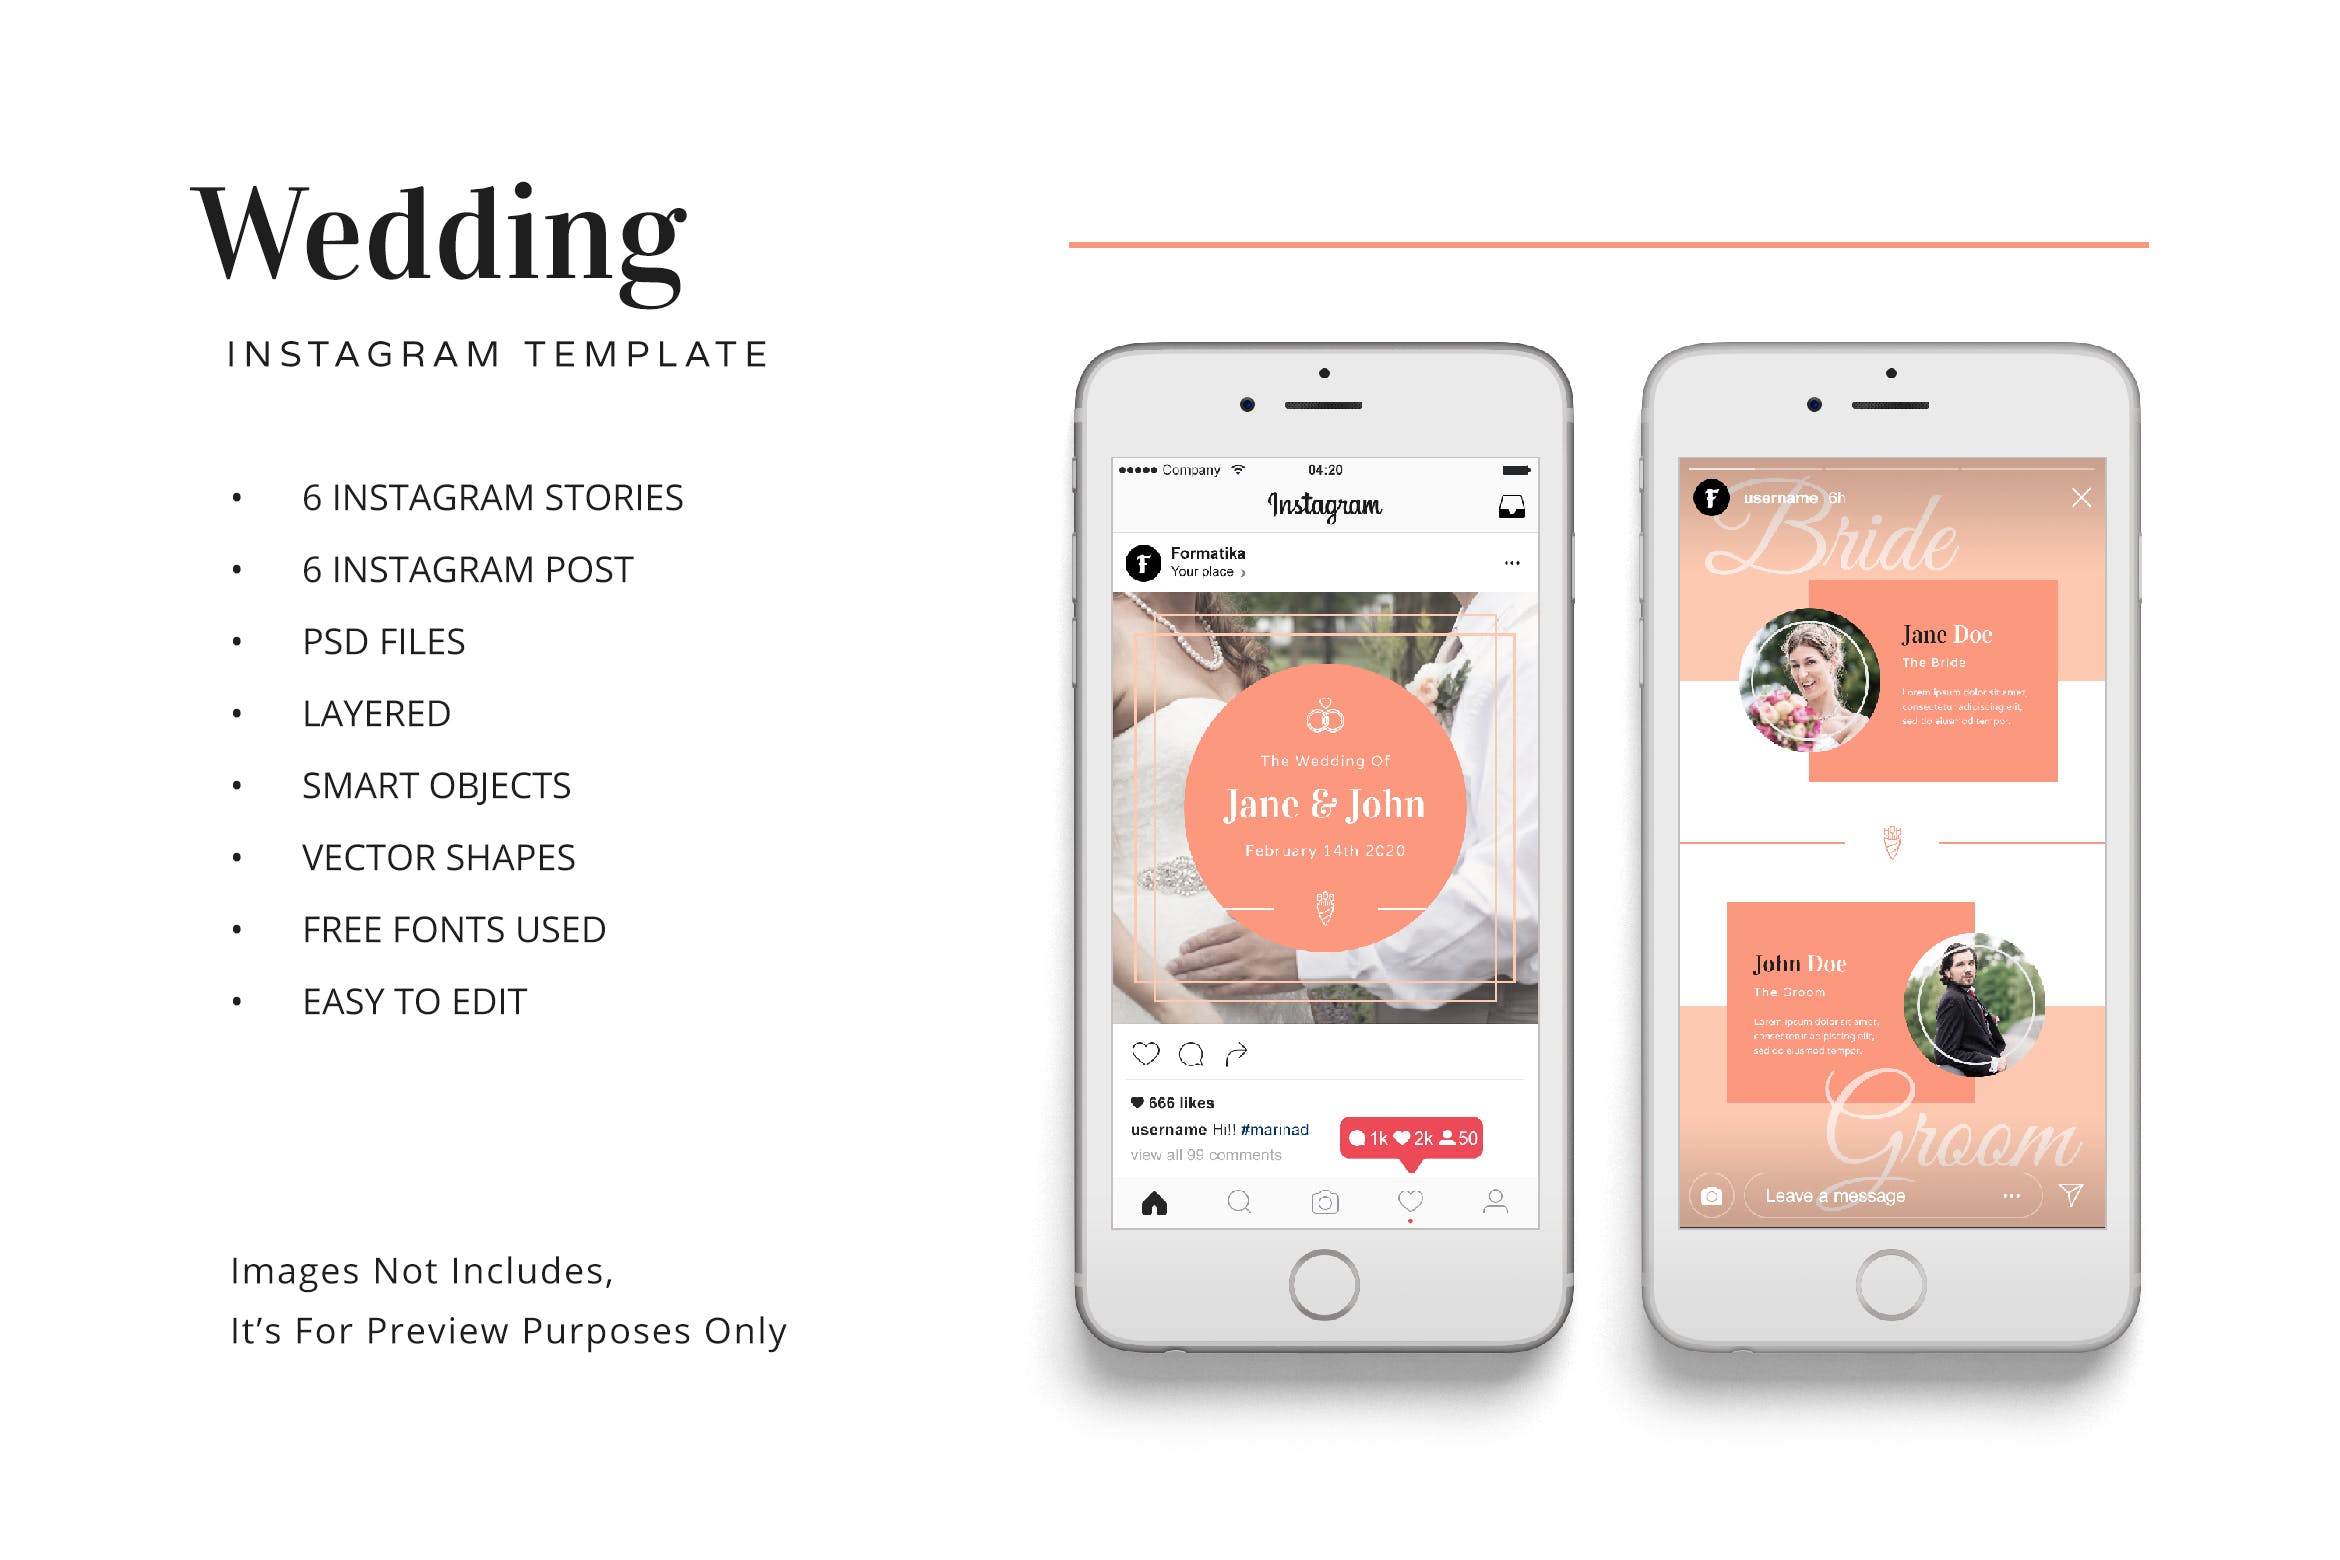 婚礼婚宴Instagram社交邀请函设计模板第一素材精选 Wedding Instagram Kit Template插图